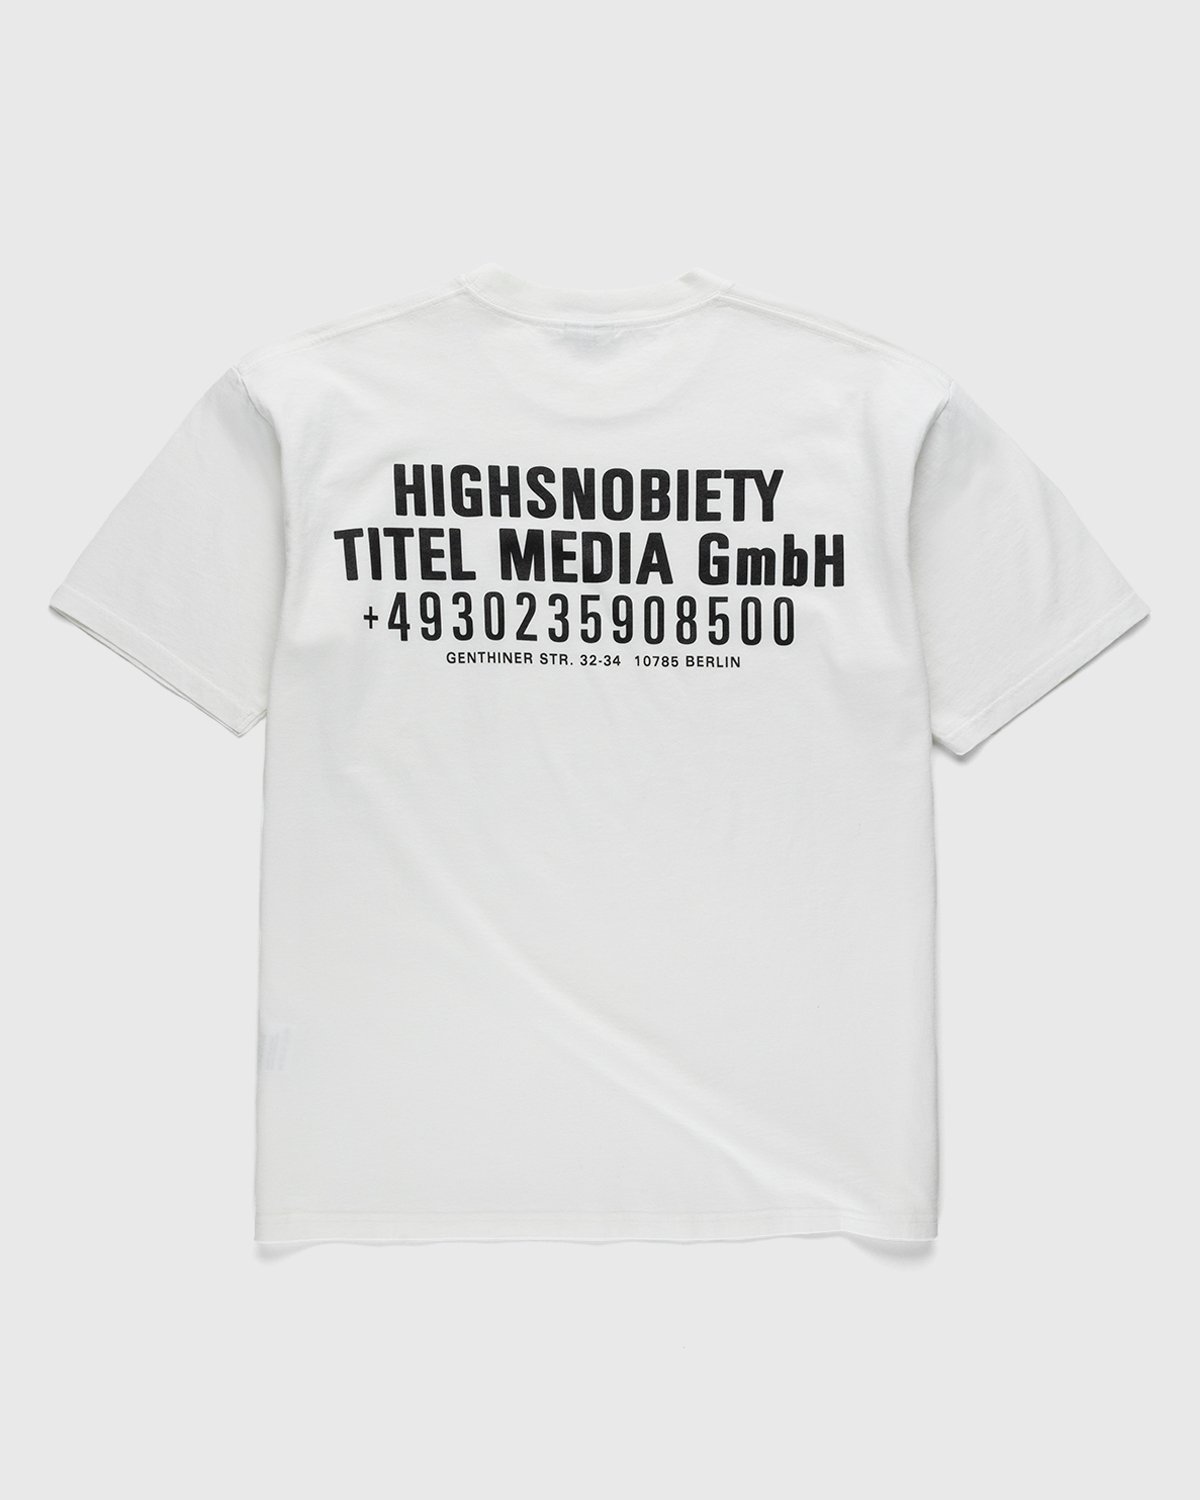 Highsnobiety - Titel Media GmbH T-Shirt White - Clothing - White - Image 1